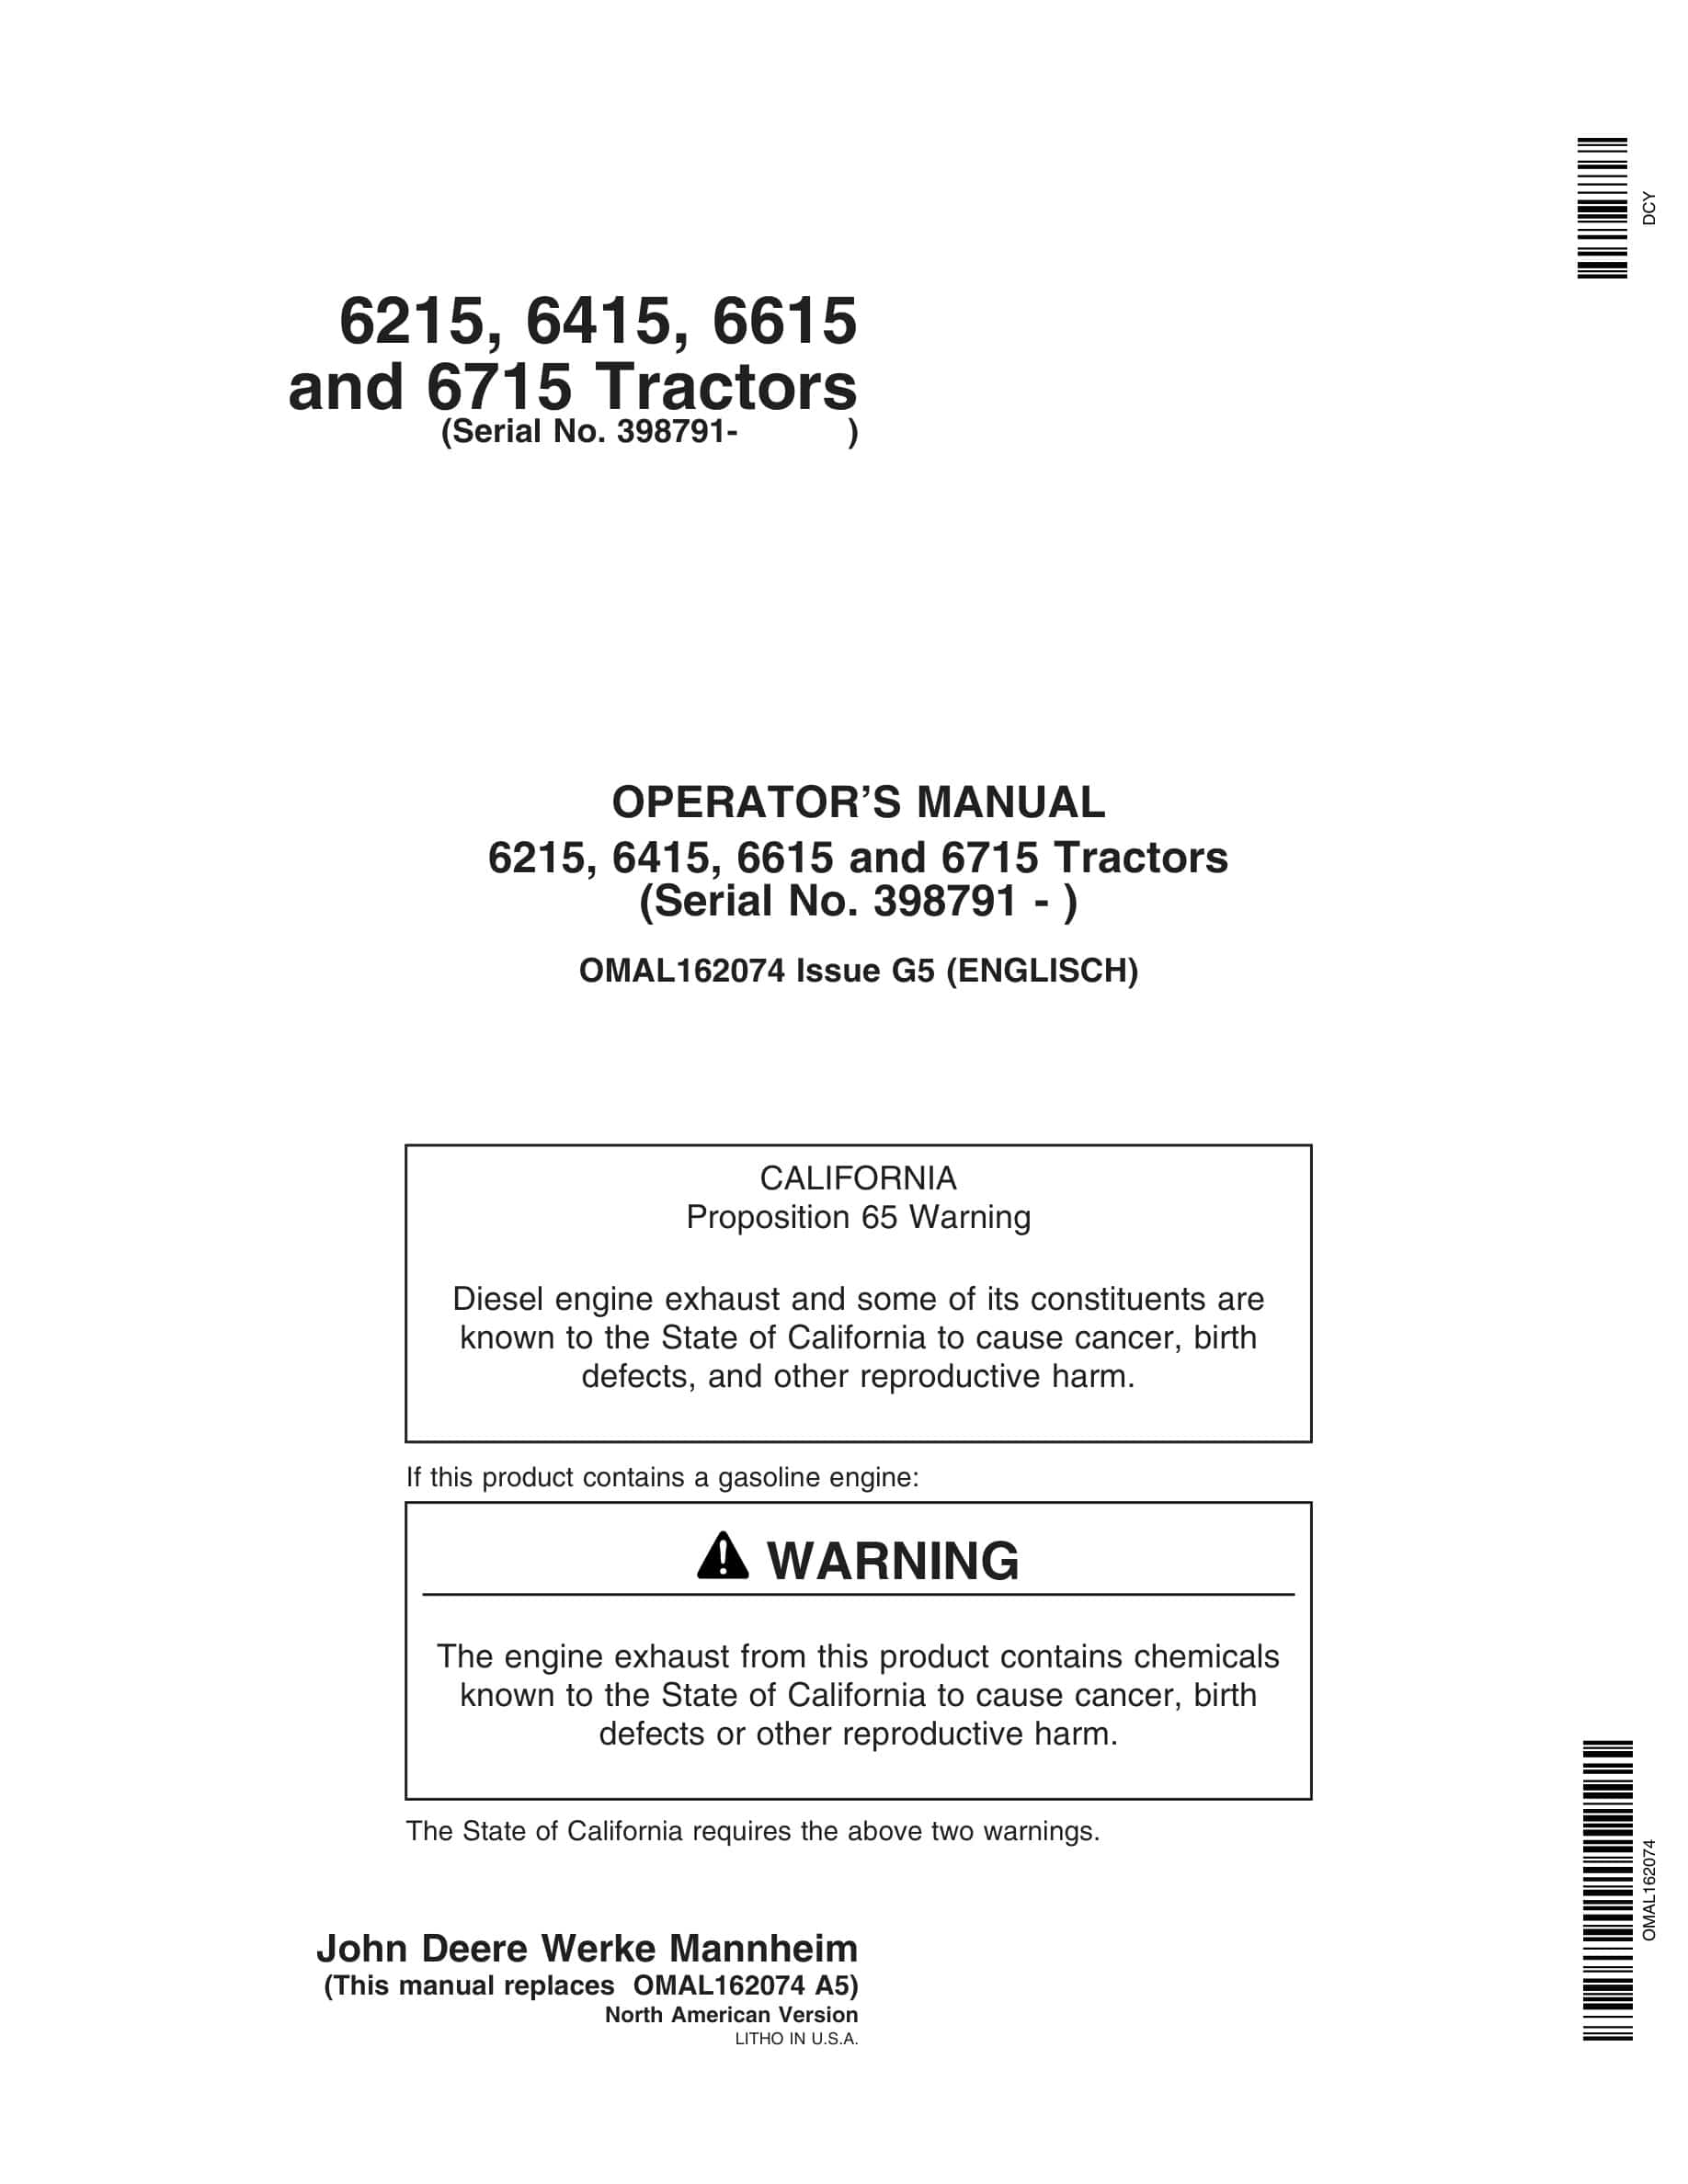 John Deere 6215, 6415, 6615 and 6715 Tractor Operator Manual OMAL162074-1